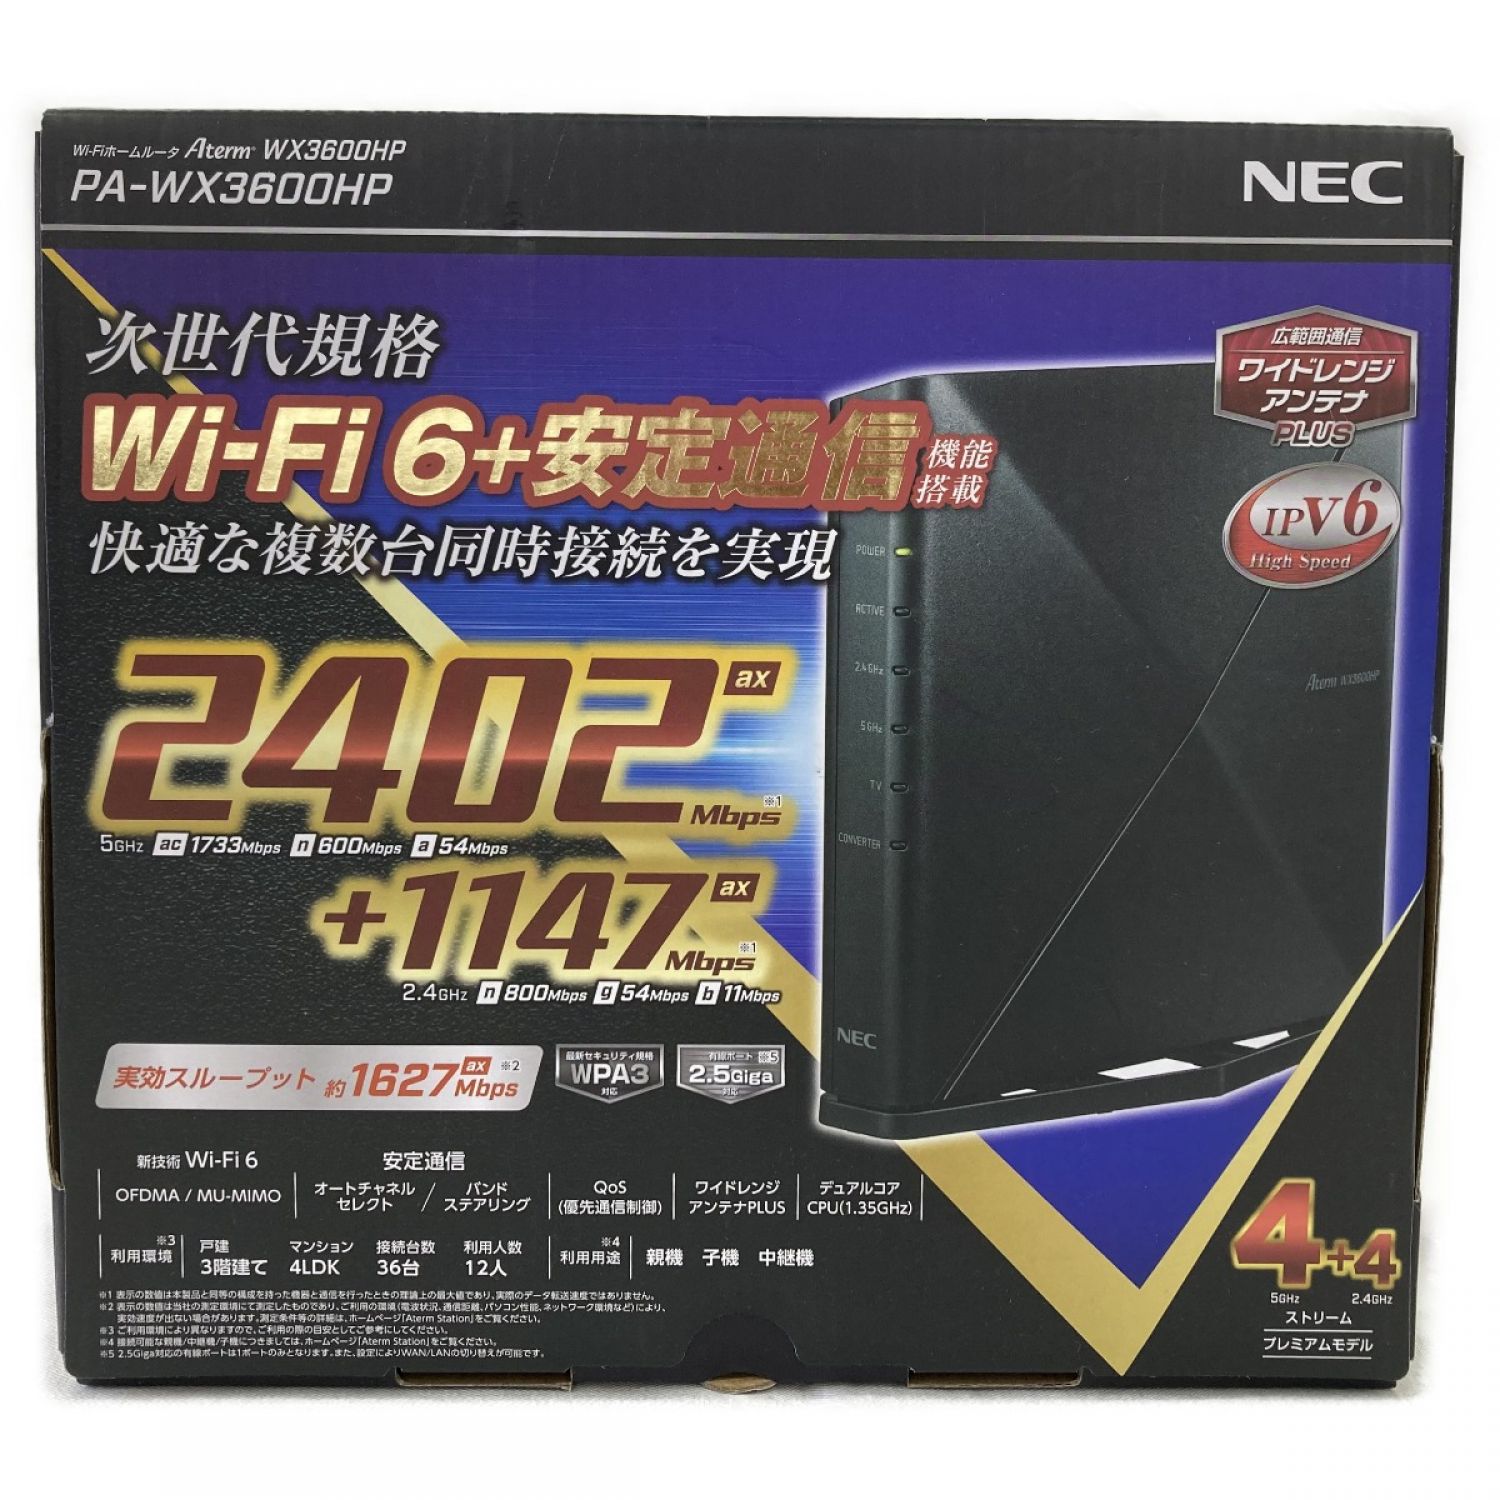 PA-WX3600HP NEC 無線LANルータ Aterm ブラック